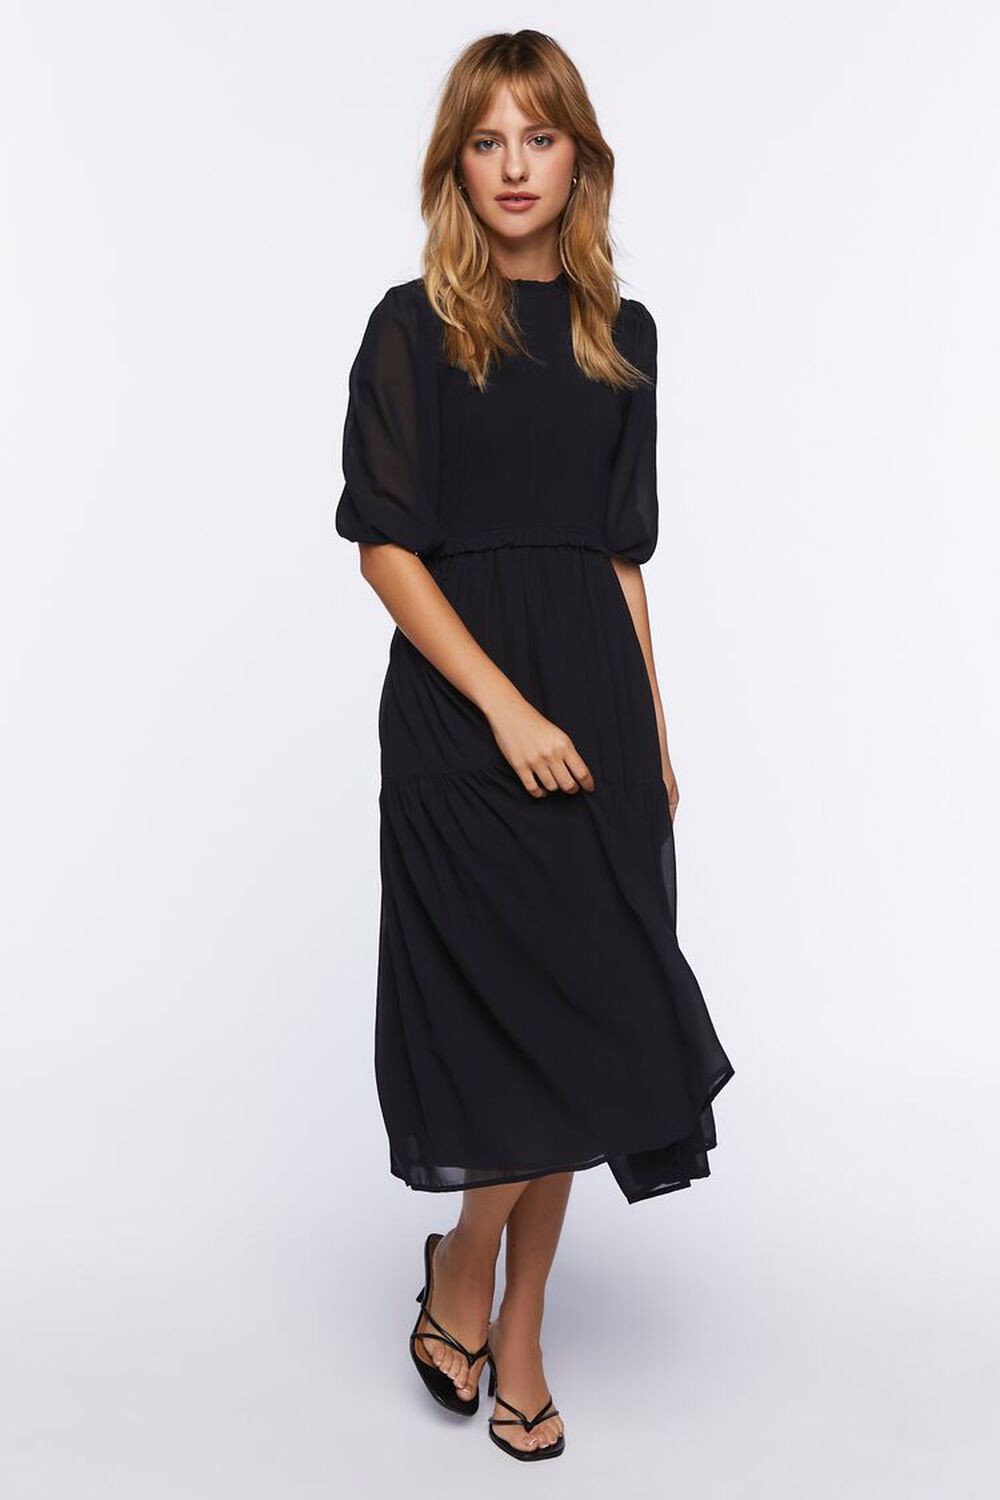 BLACK Smocked Peasant-Sleeve Dress, image 1